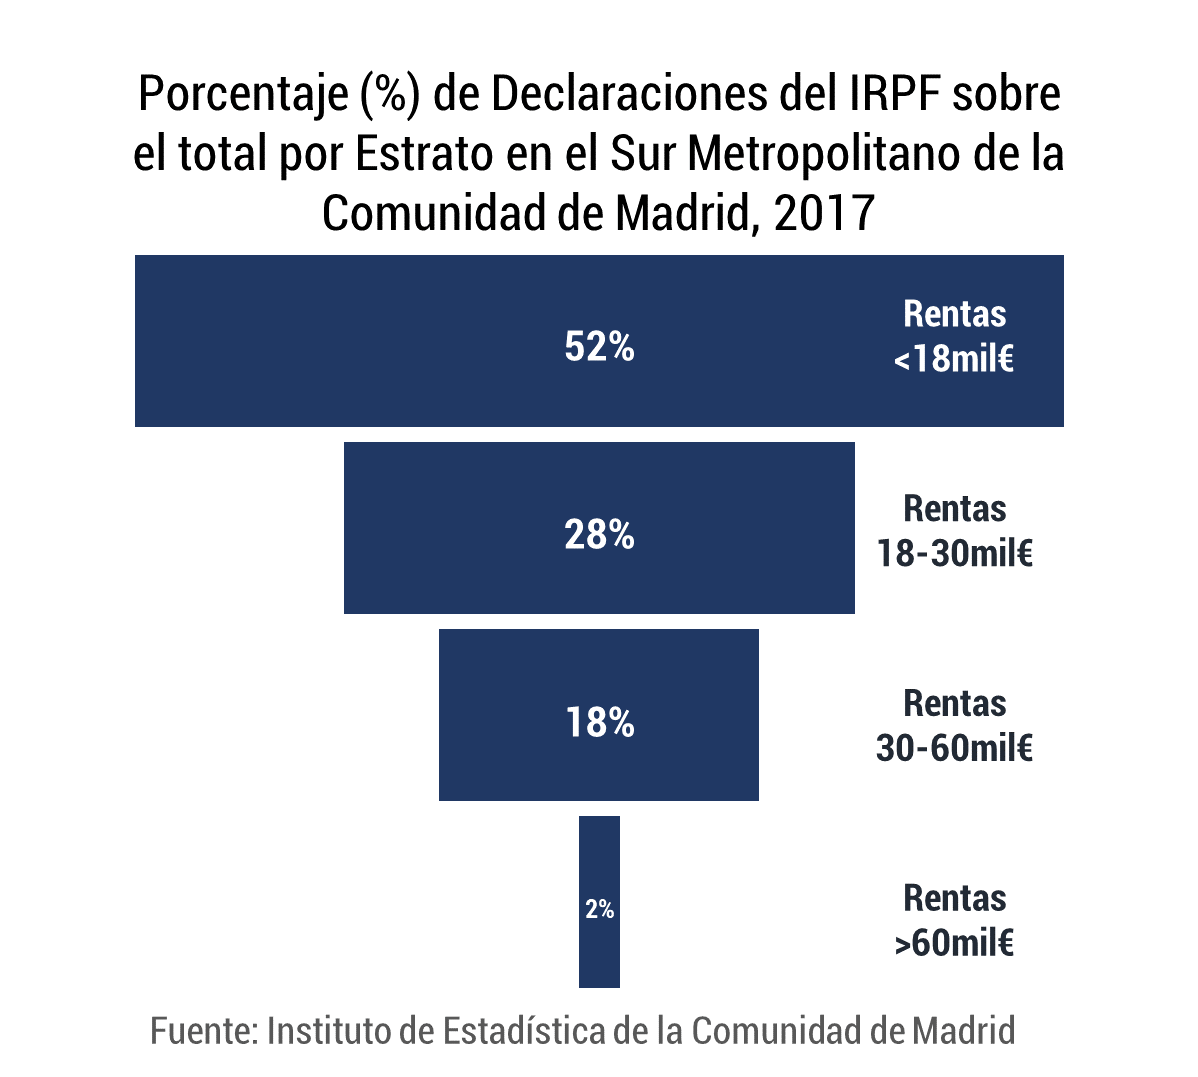 Pirámide invertida IRPF Sur Metropolitano Comunidad de Madrid 2017